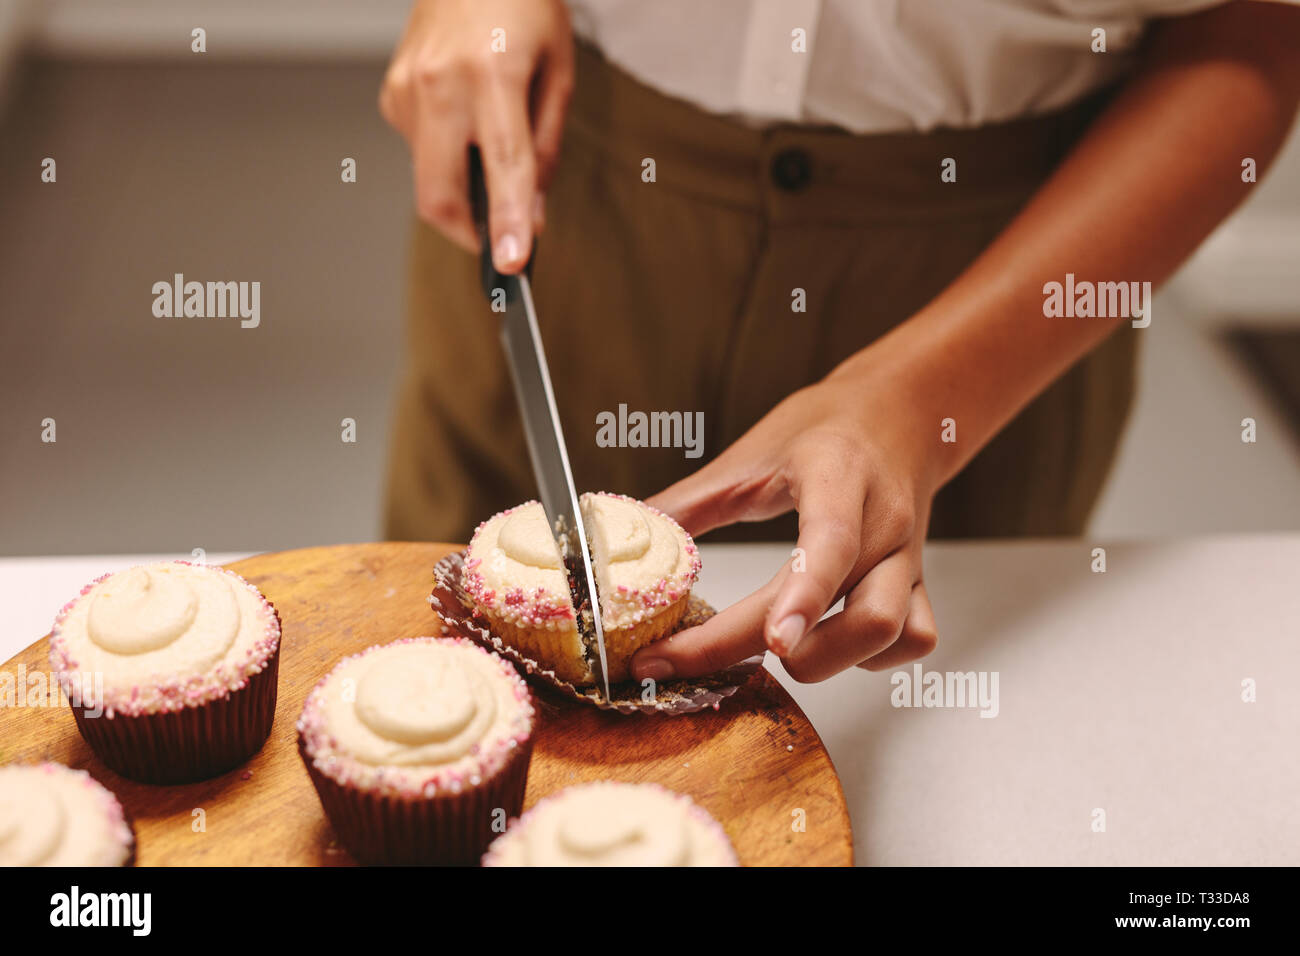 Cerca de chef de repostería casera cortar un cupcake en placa de madera con un cuchillo. Mujer pastelería preparando magdalenas en la cocina. Foto de stock